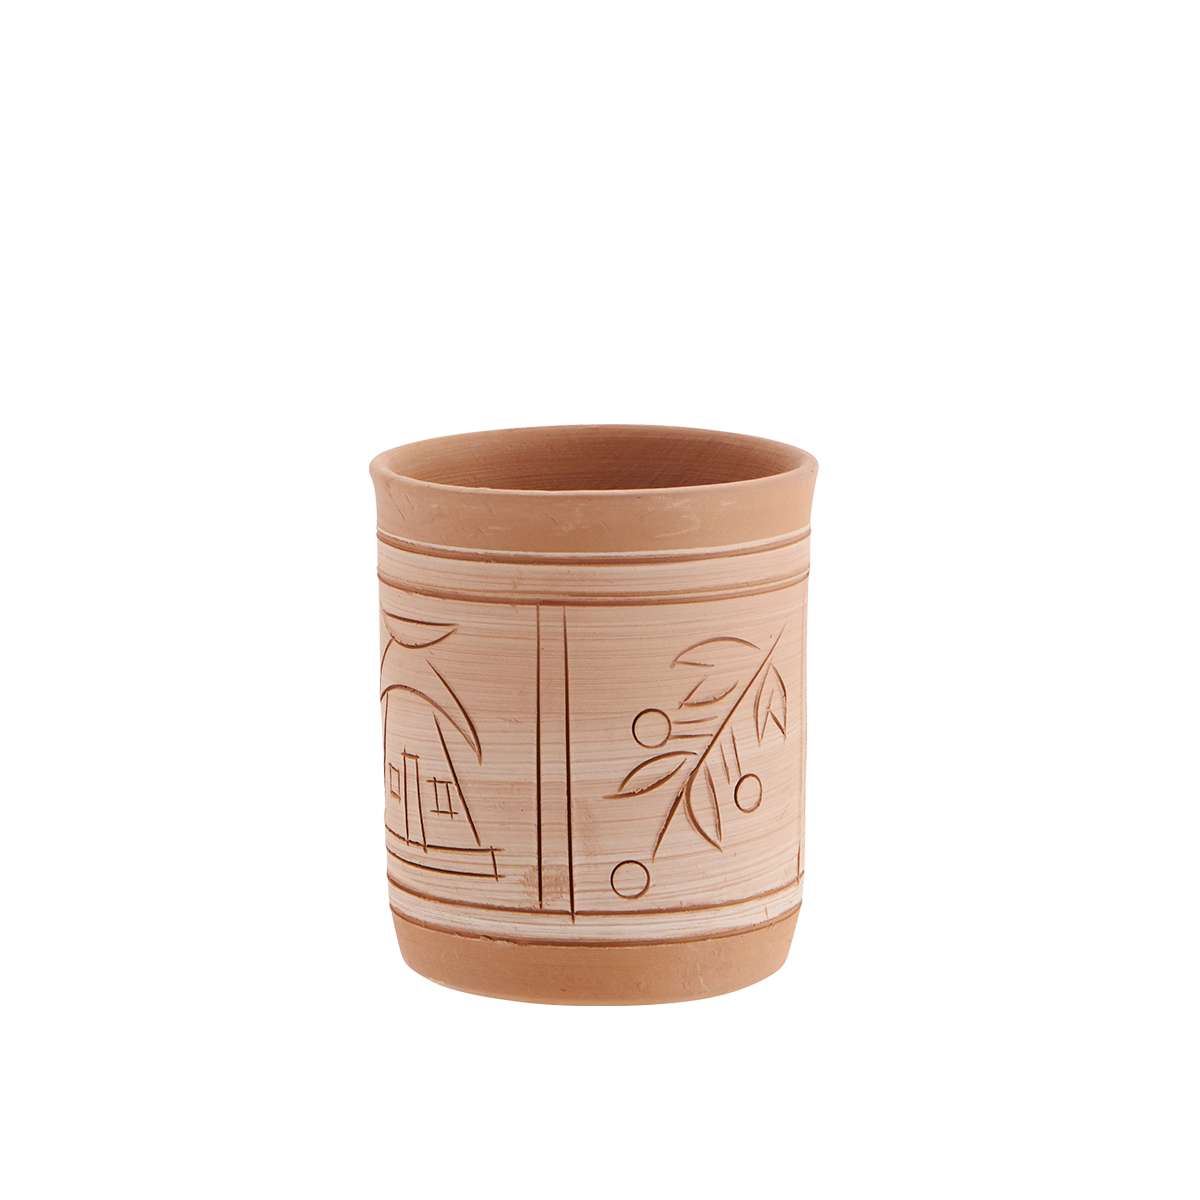 Handmade terracotta flower pot